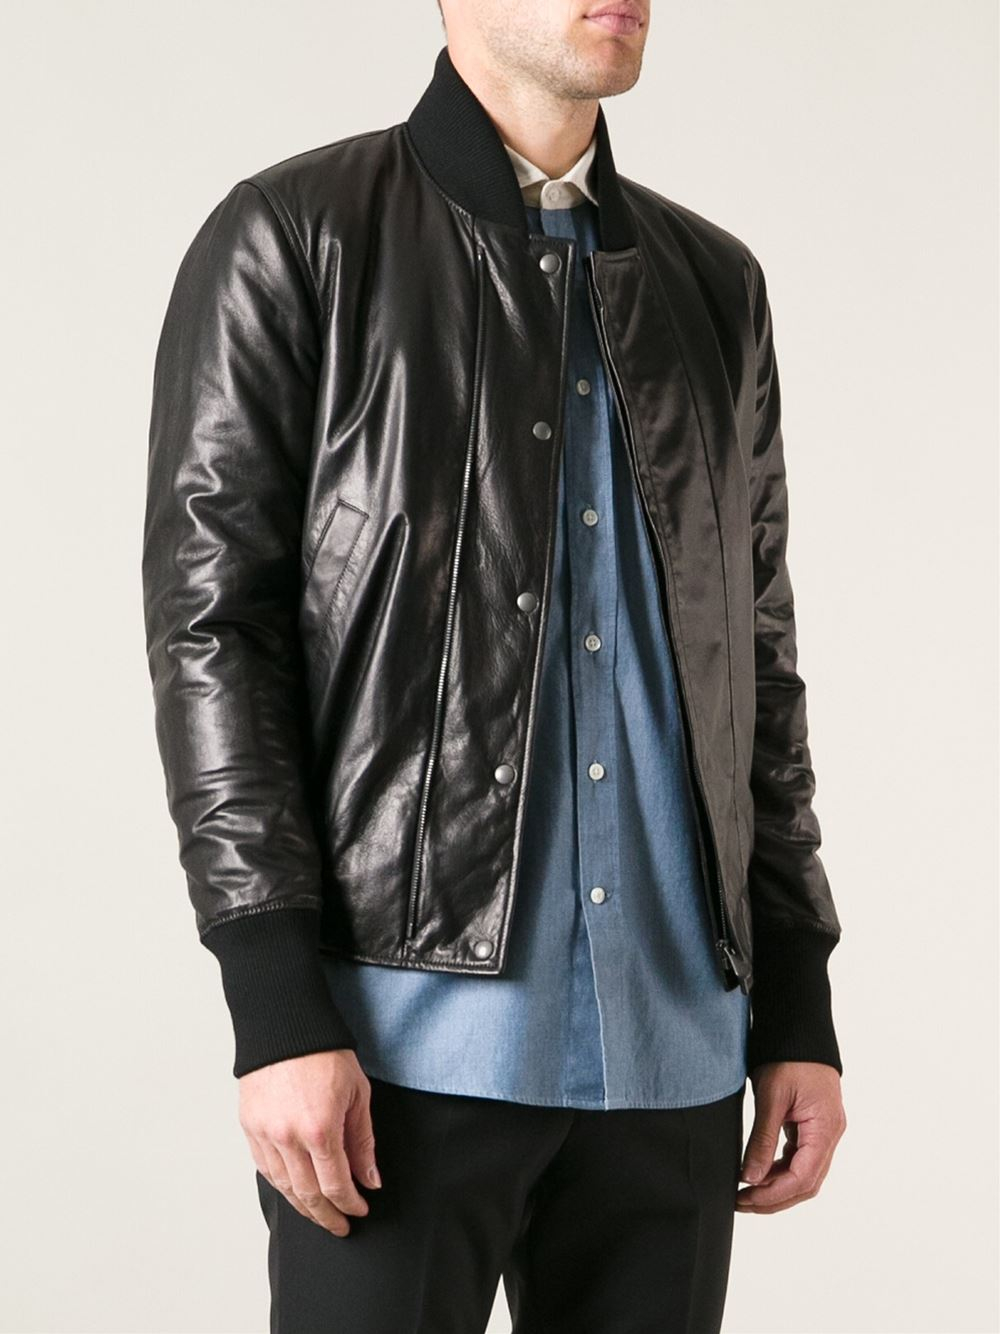 Lyst - Bottega Veneta Leather Jacket in Black for Men